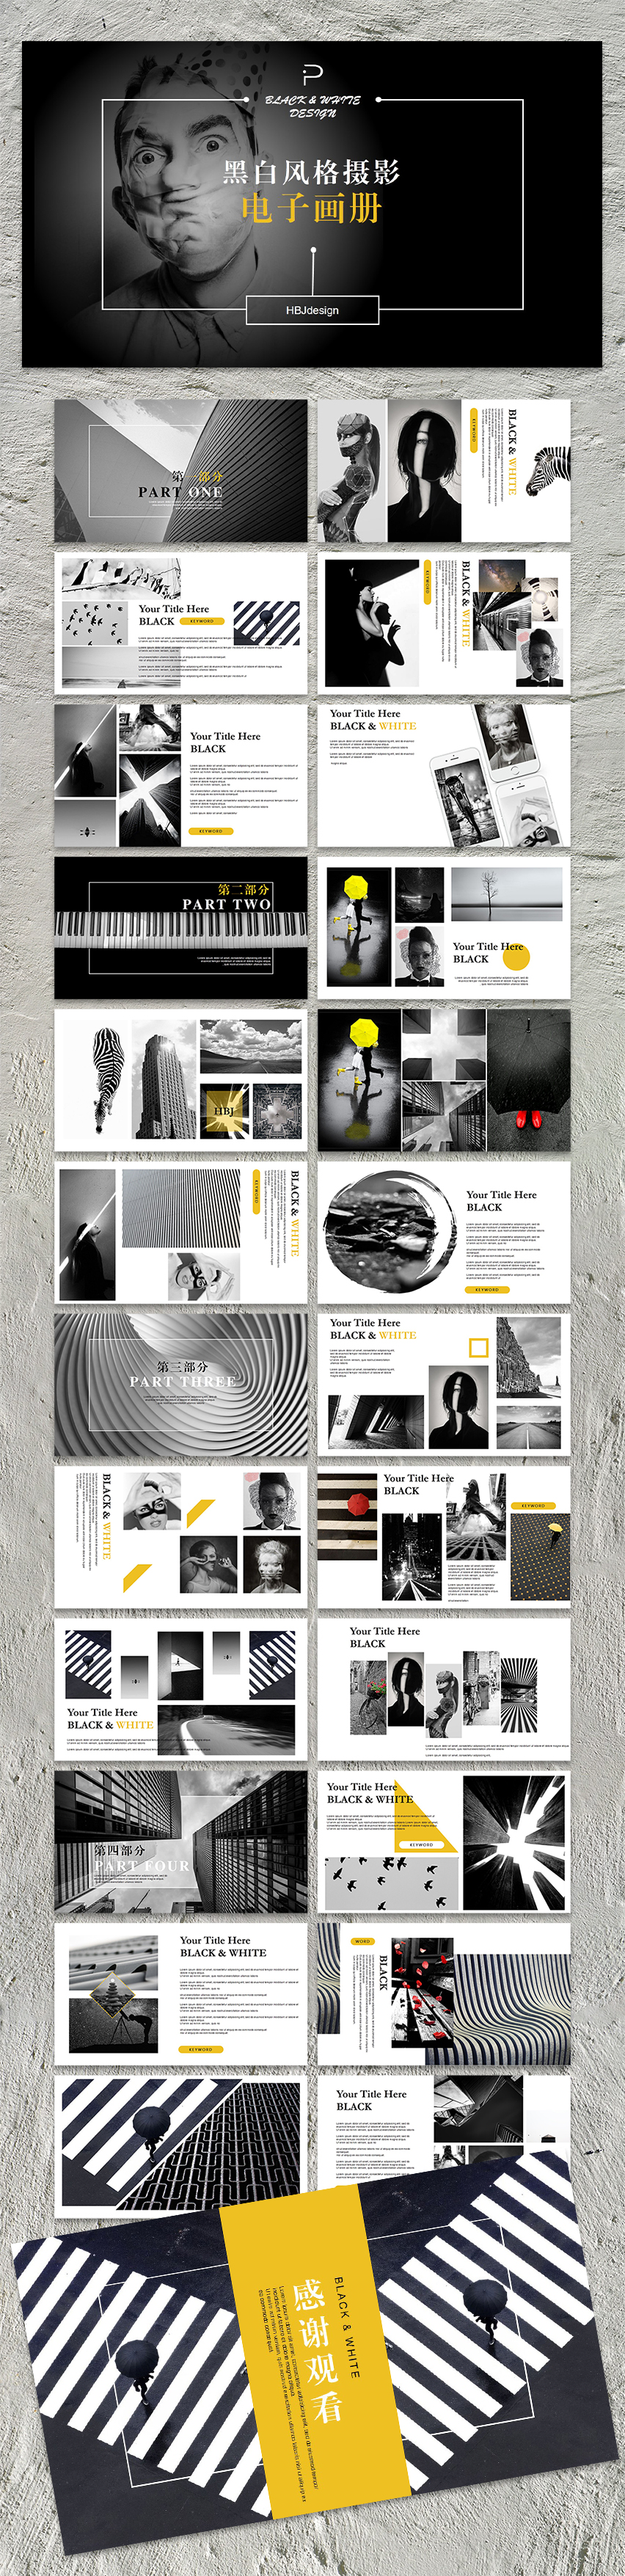 黑白灰度图文排版多图排版企业宣传画册摄影画册产品画册毕业纪念电子